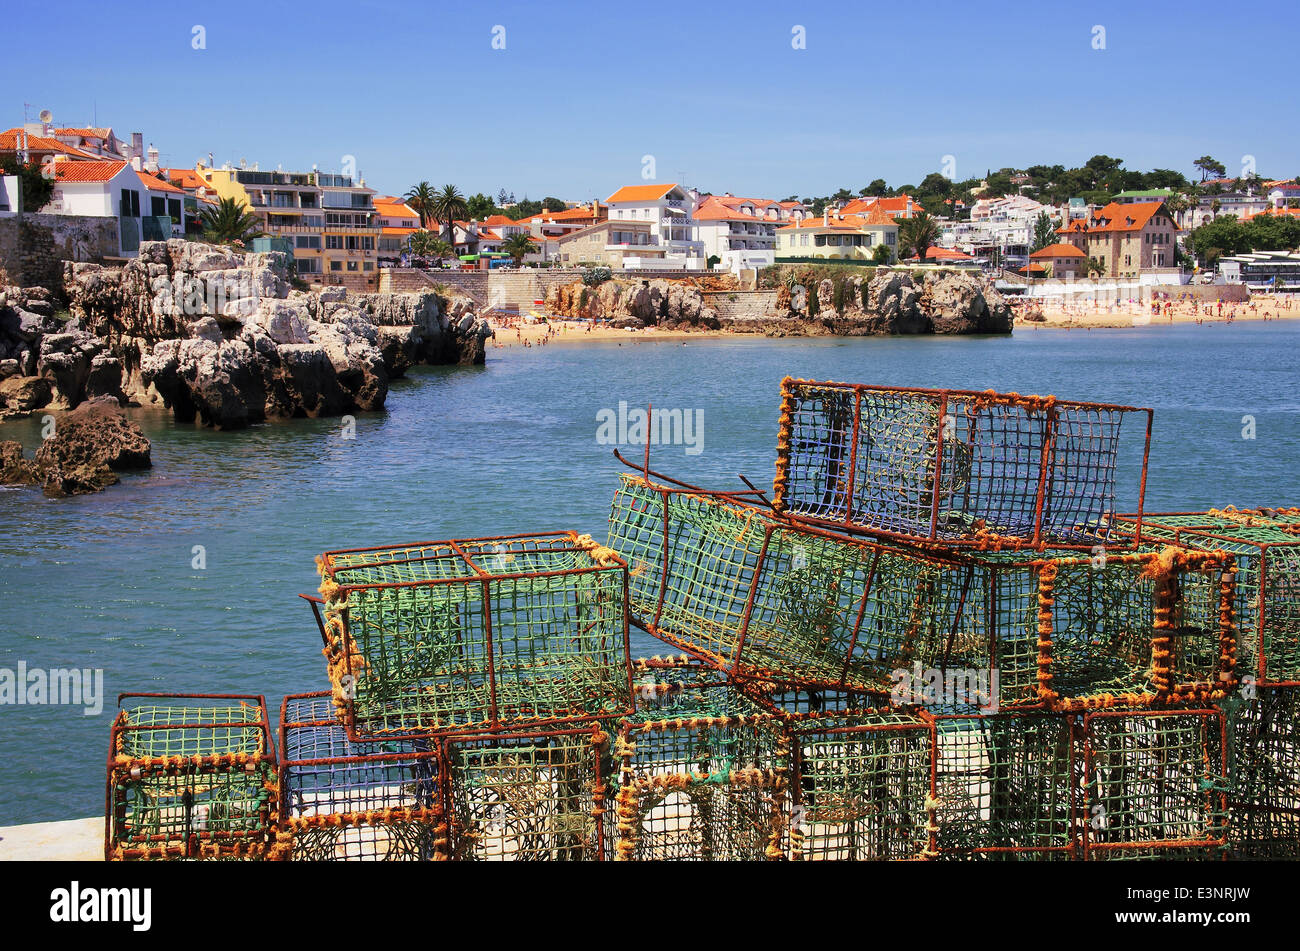 Capturas de pesca en un puerto y una visión global de la hermosa villa turística de Cascais, Portugal. Foto de stock